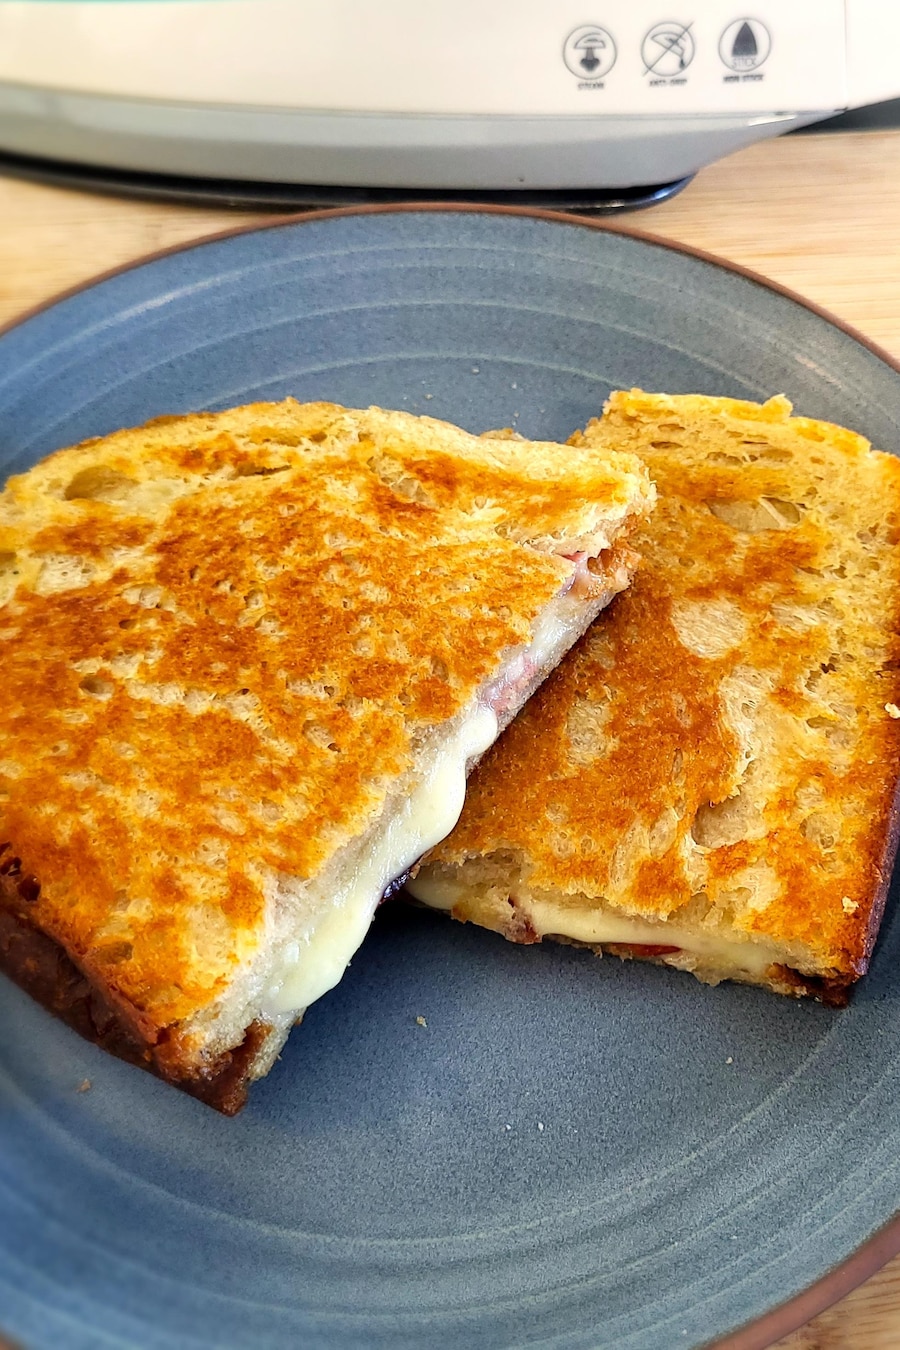 Un grilled cheese prêt à être dégusté dans une assiette bleue.